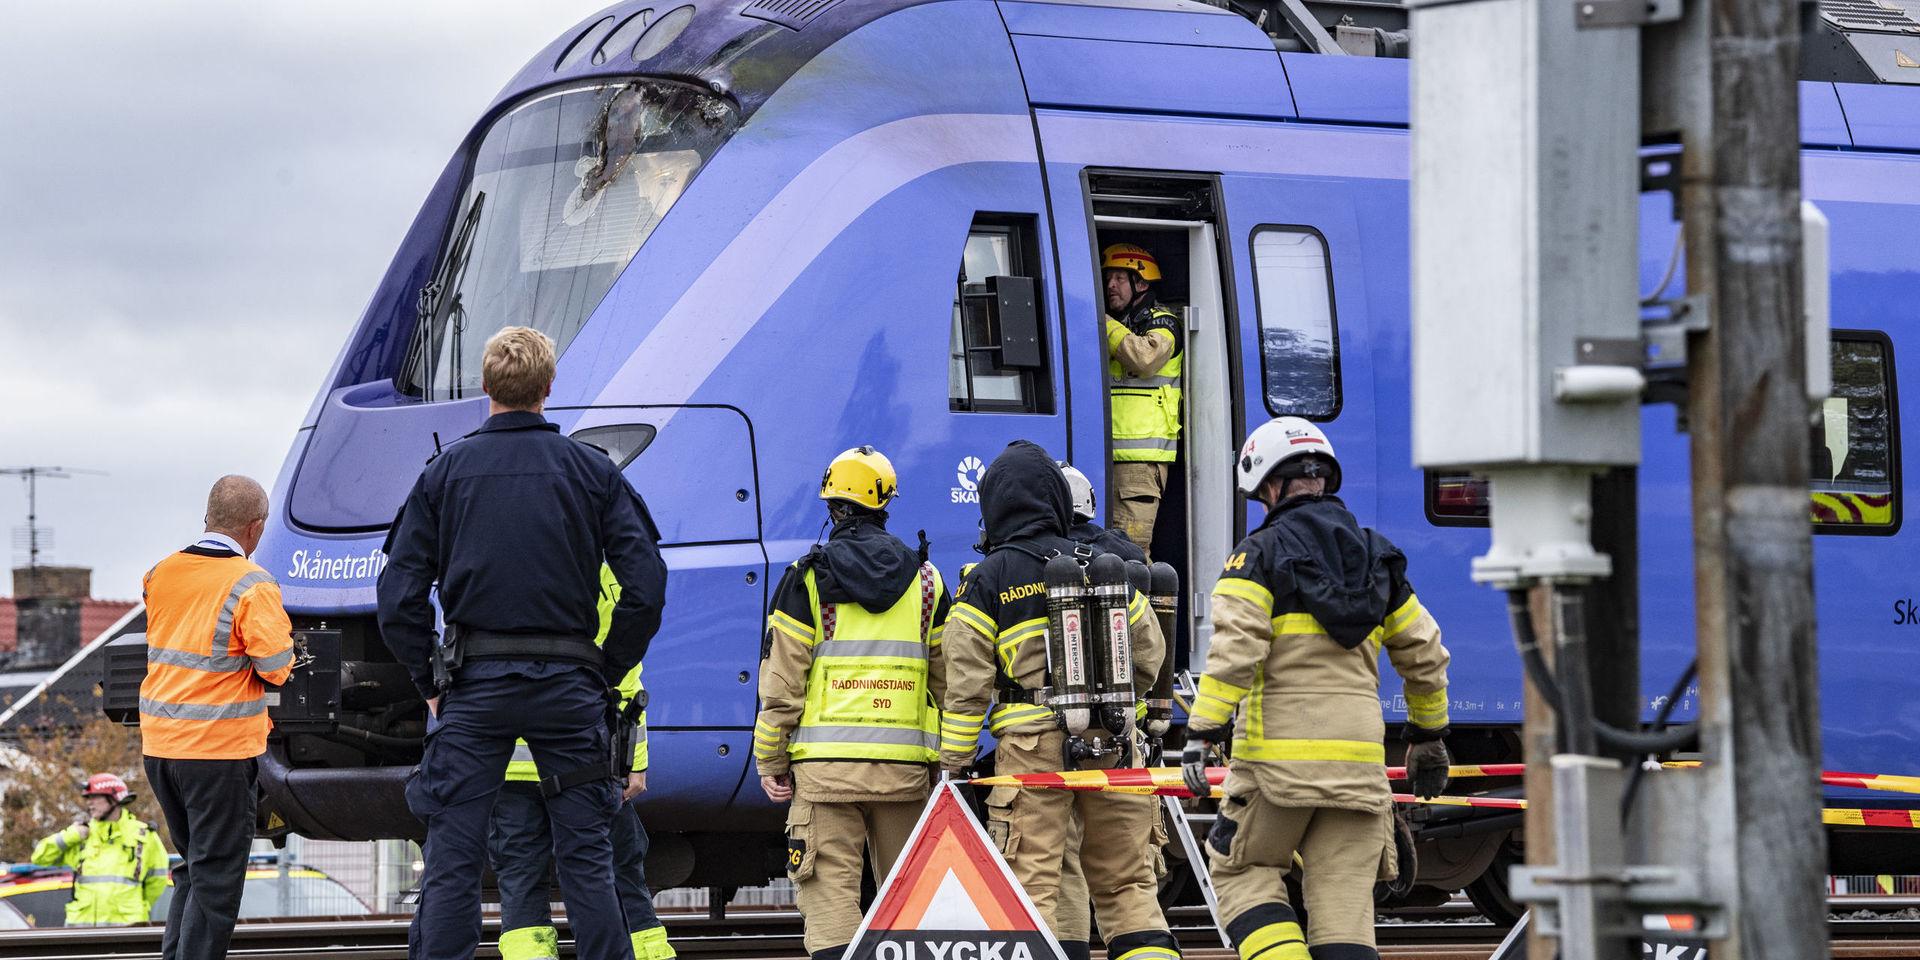 Polis, räddningstjänst och tågpersonal på plats vid det pågatåg som började brinna strax nor om stationen i Eslöv på måndagseftermiddagen.